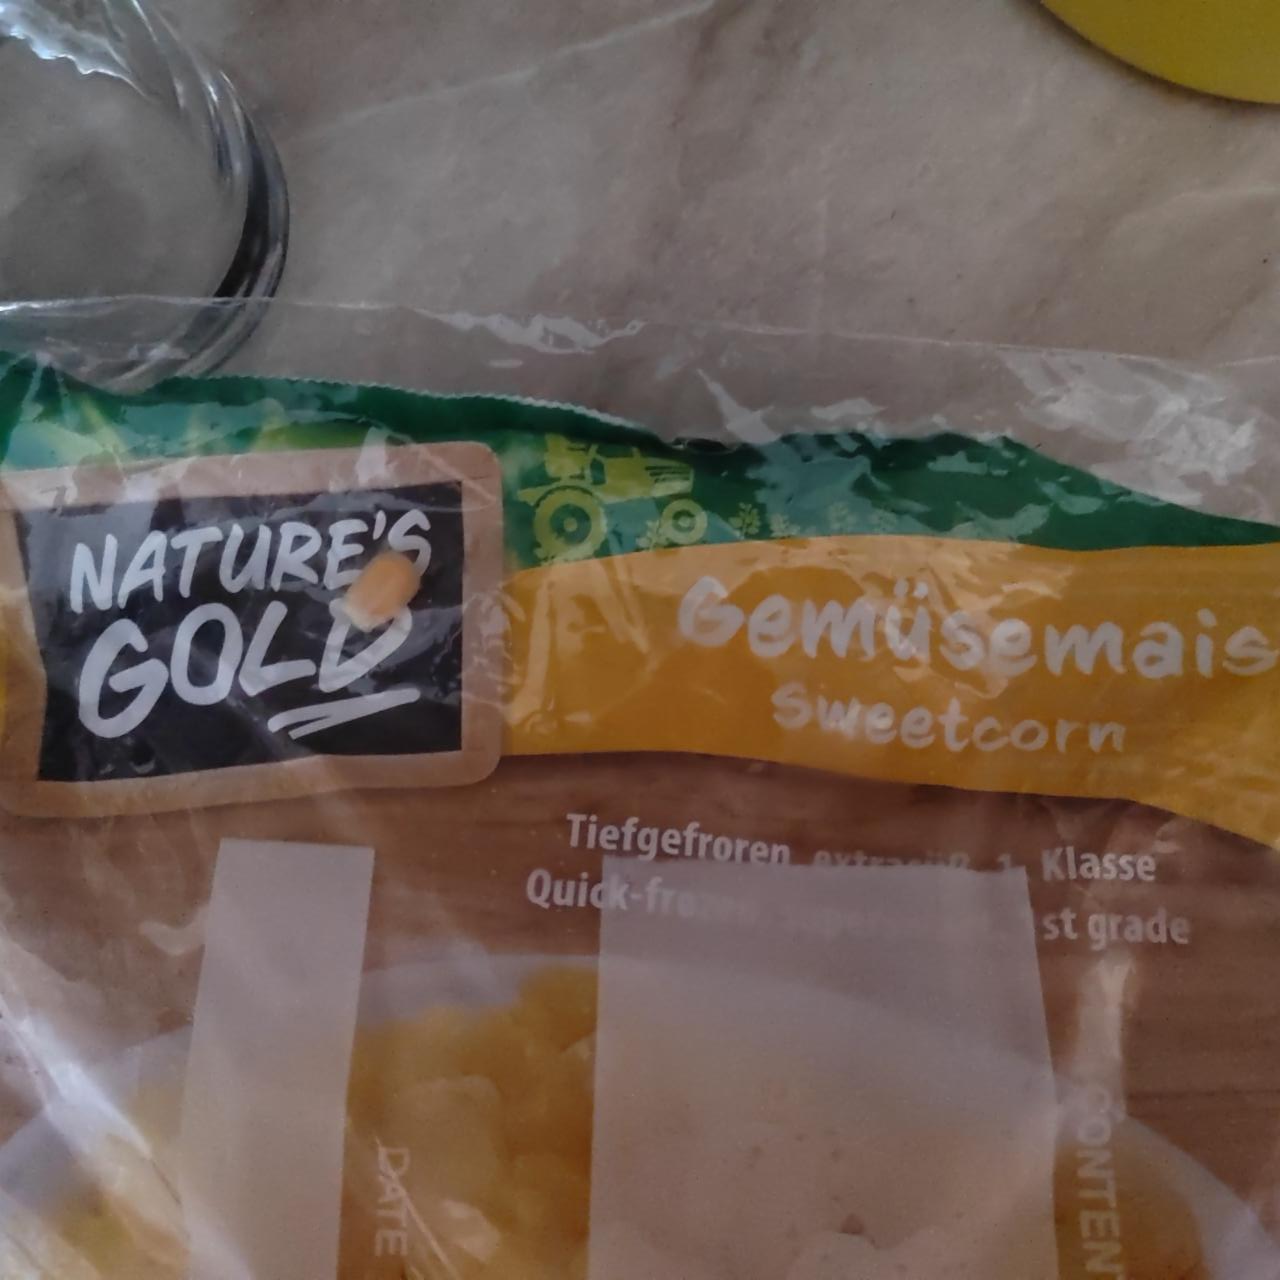 Képek - Gemuseais sweetcorn Nature´s Gold